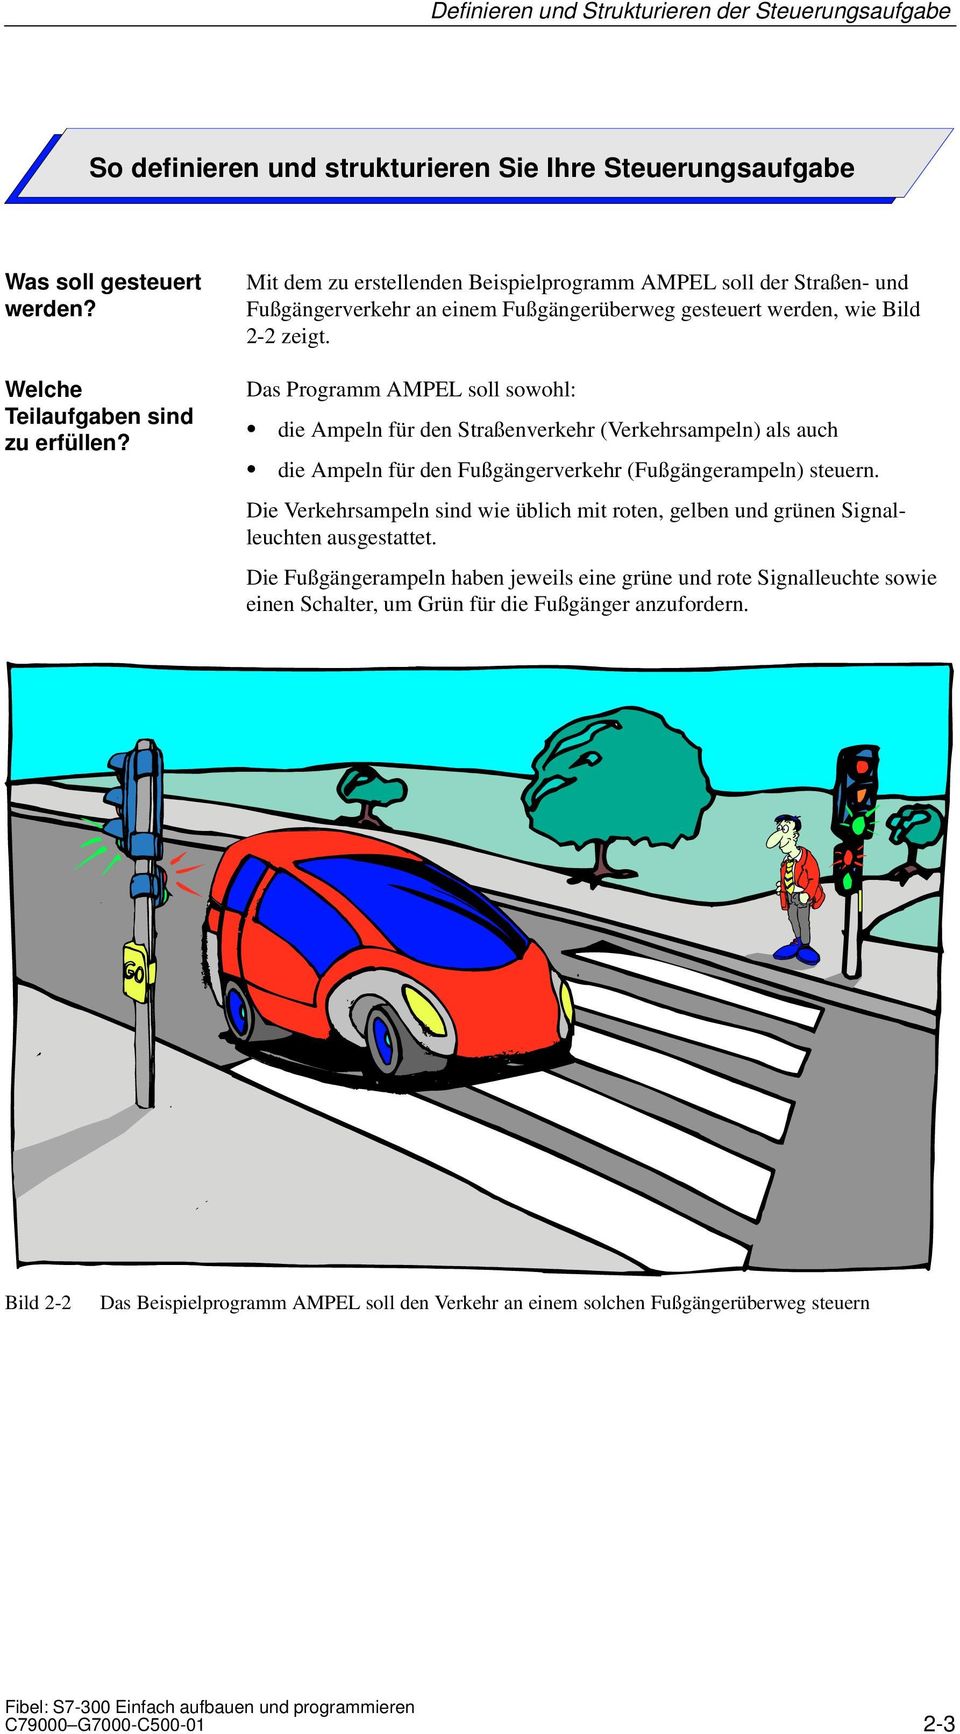 Das Programm AMPEL soll sowohl: die Ampeln für den Straßenverkehr (Verkehrsampeln) als auch die Ampeln für den Fußgängerverkehr (Fußgängerampeln) steuern.